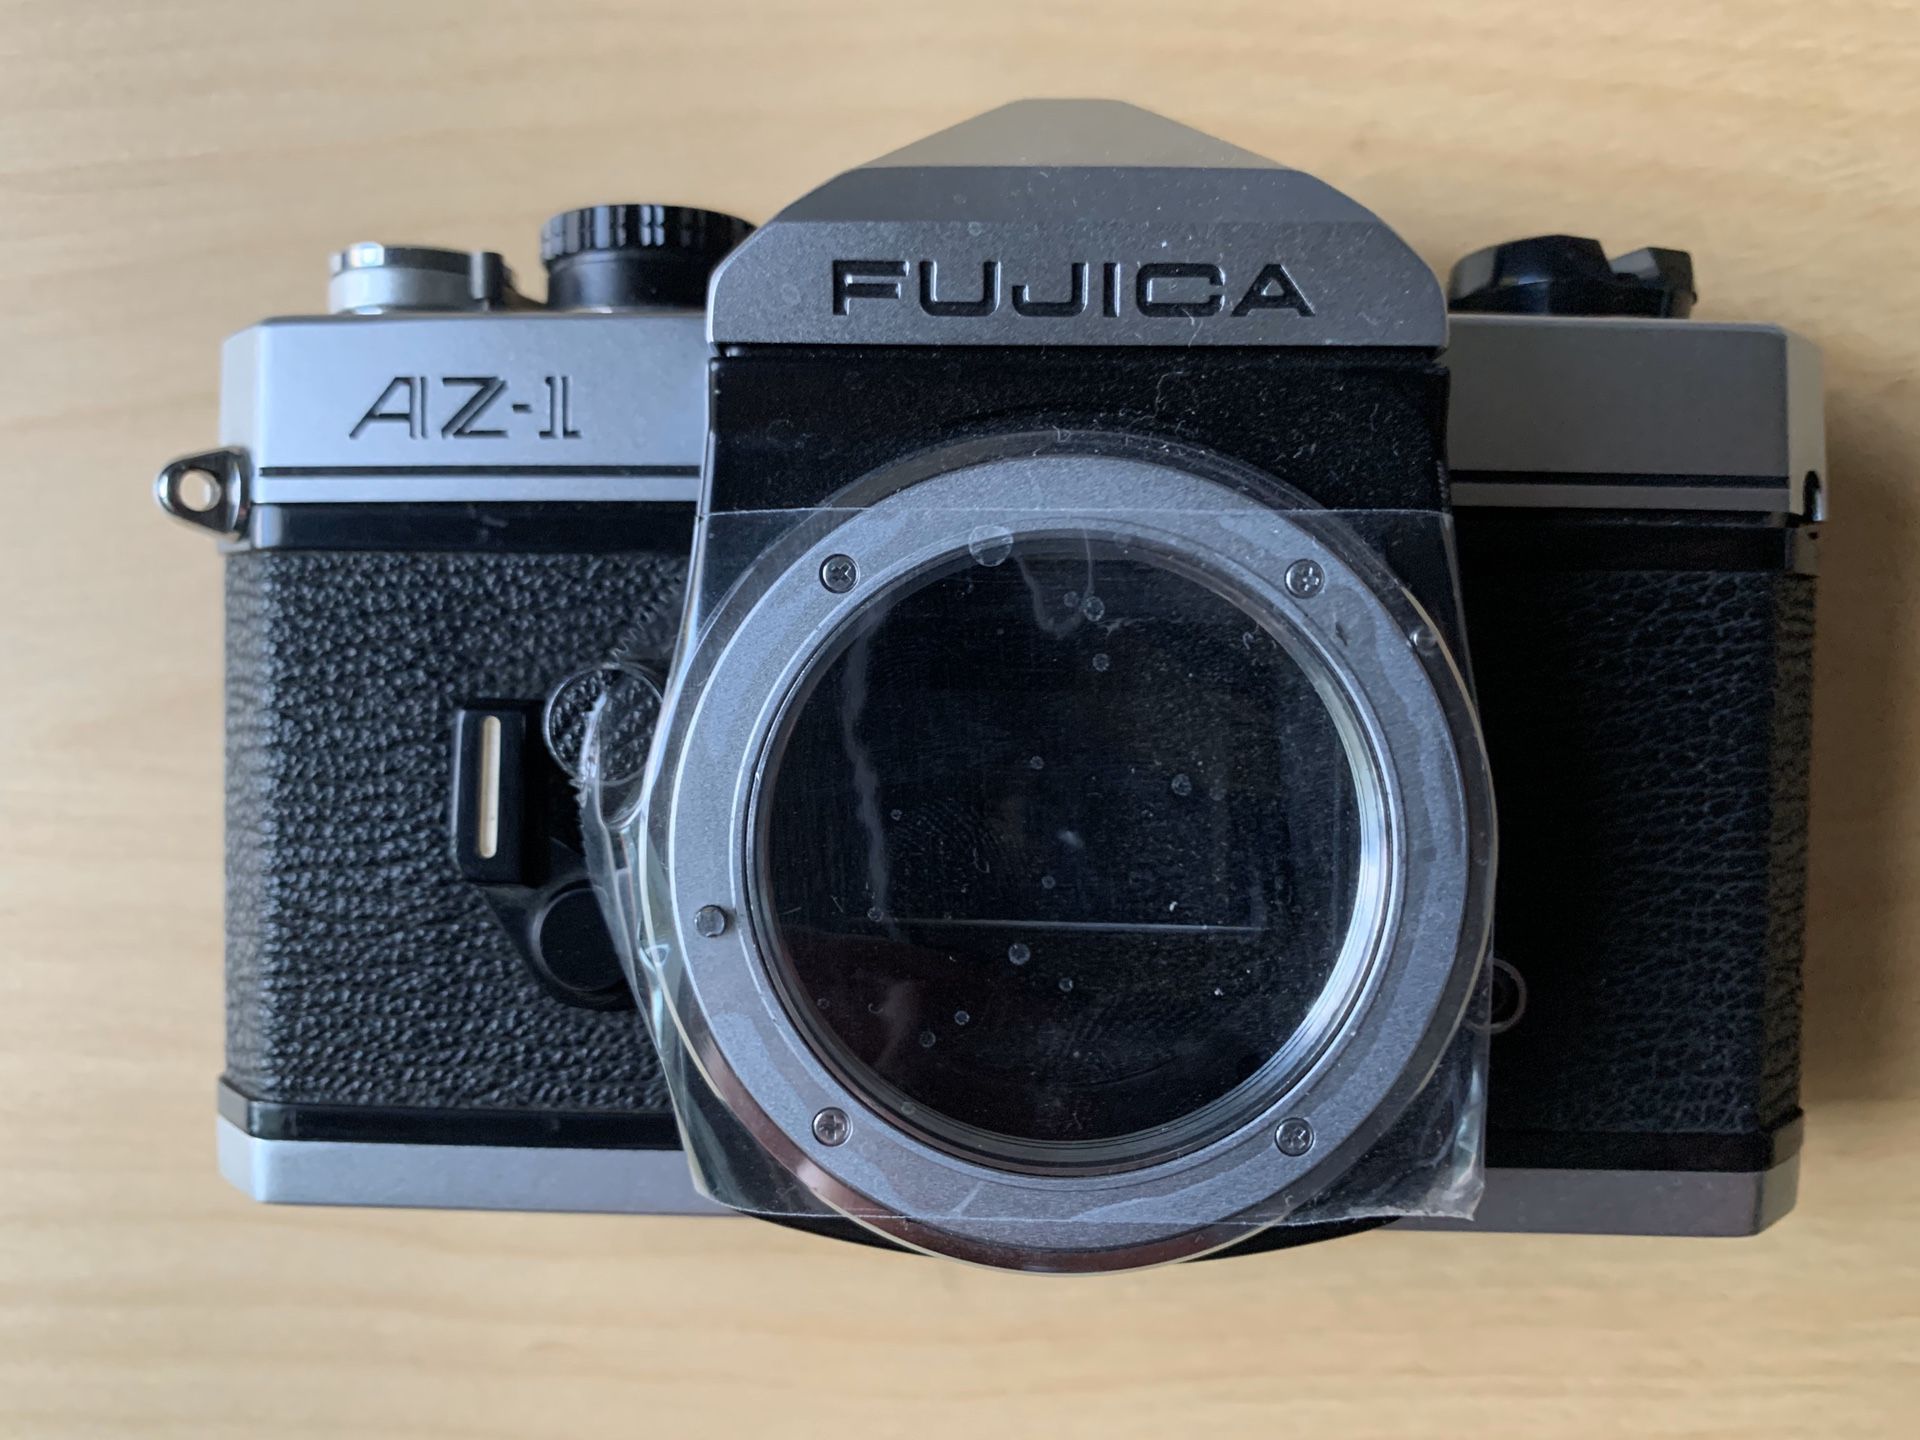 Fujica AZ-1, 35mm film camera